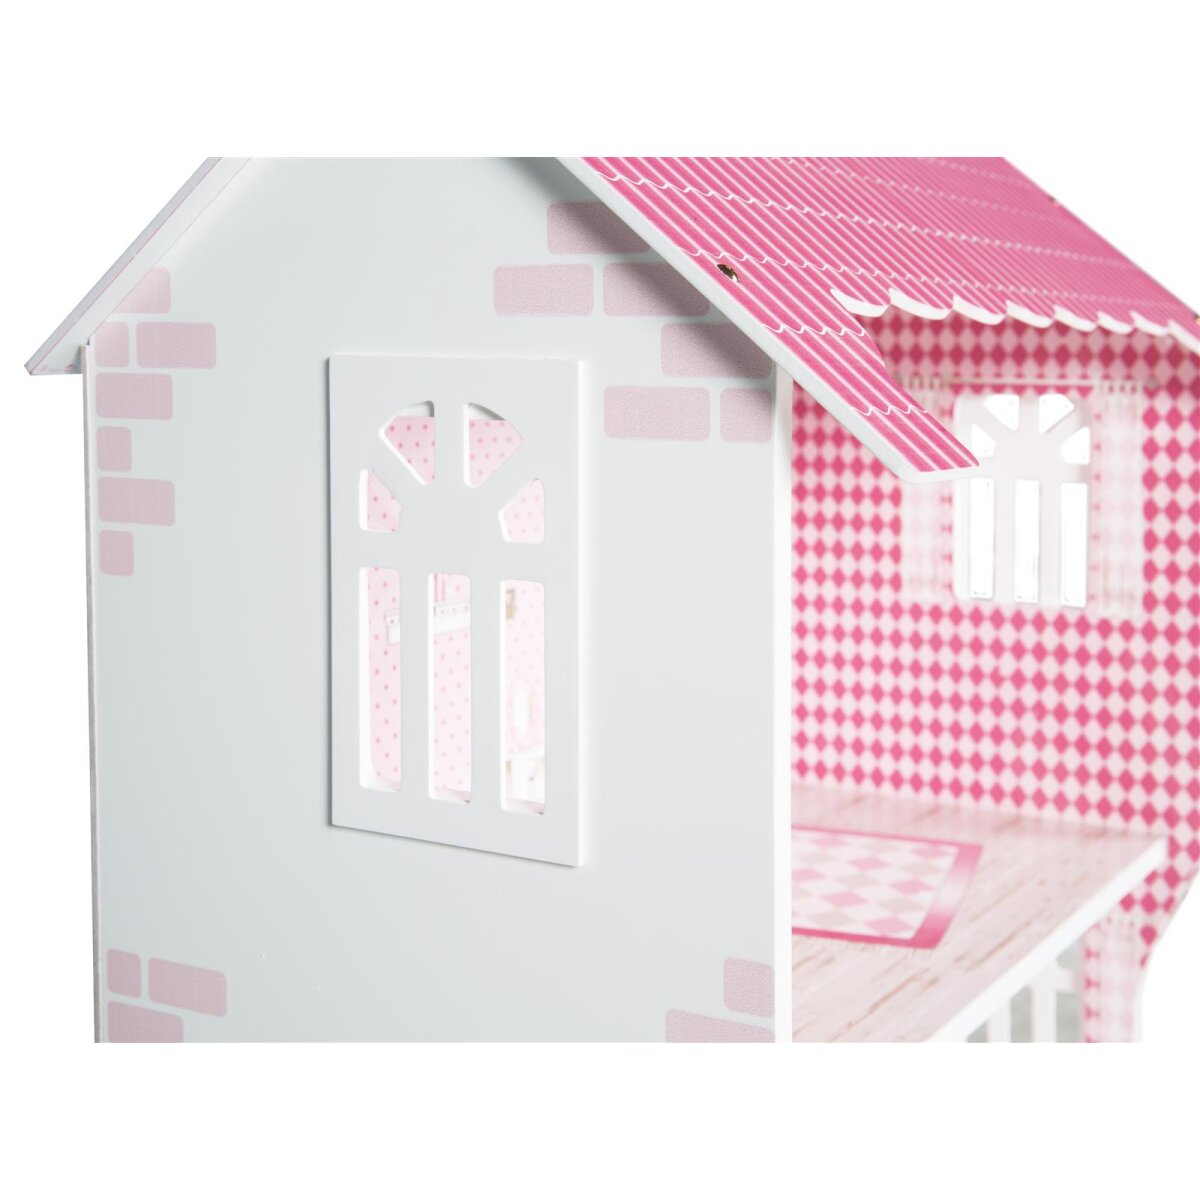 B-Ware gut, inkl. für rosa/weiß sehr - 64,99 Puppenhaus roba Spielregal € Aufbewahrungsbox & Spielzeug,